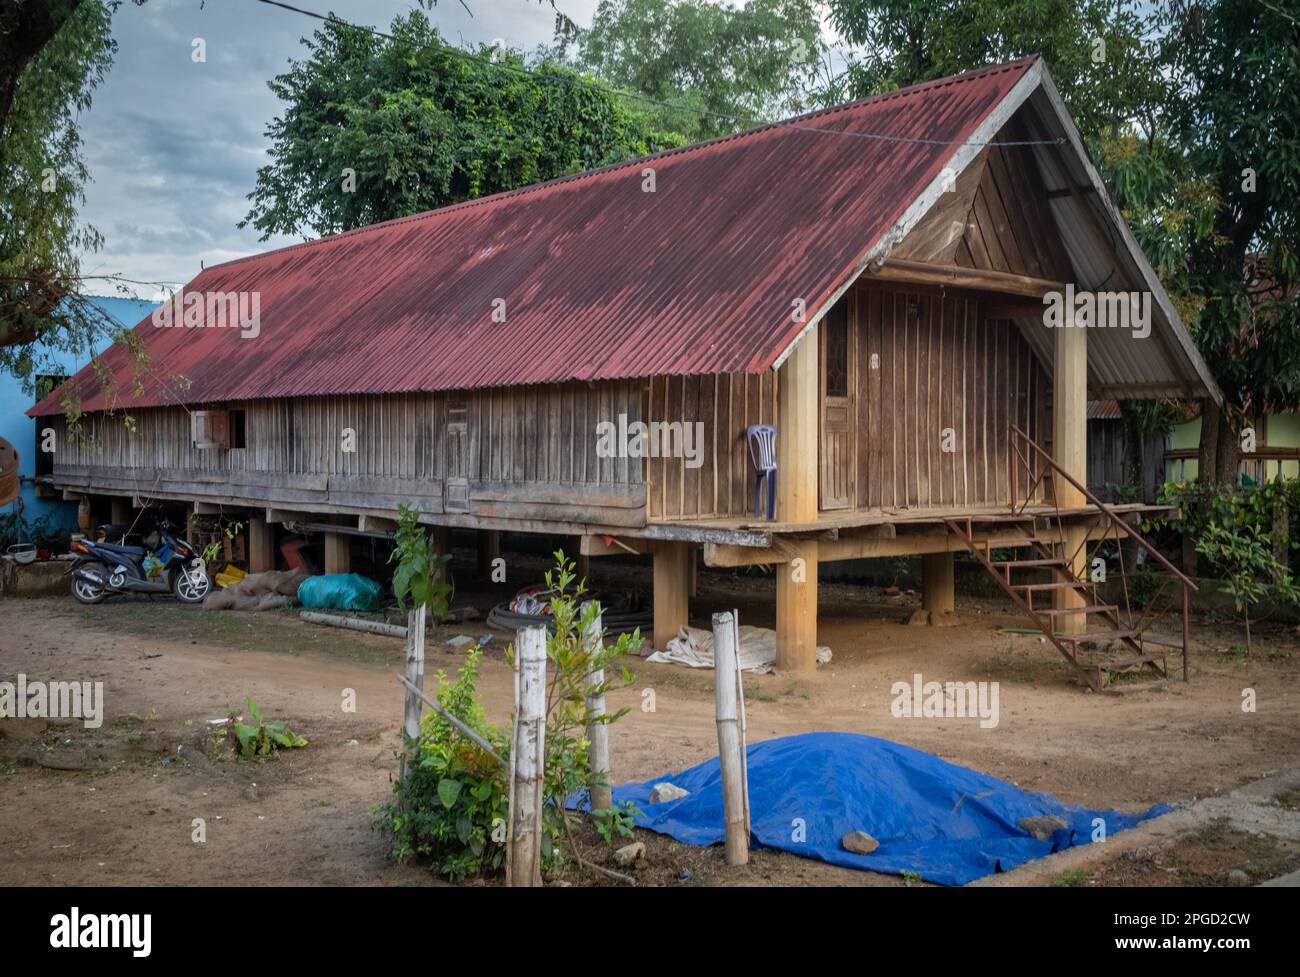 Ein traditionelles langes Holzhaus auf Pfählen gehört zur Familie der ethnischen Minderheit Mnong in Buon Jun, Lien Son, Vietnam. Stockfoto